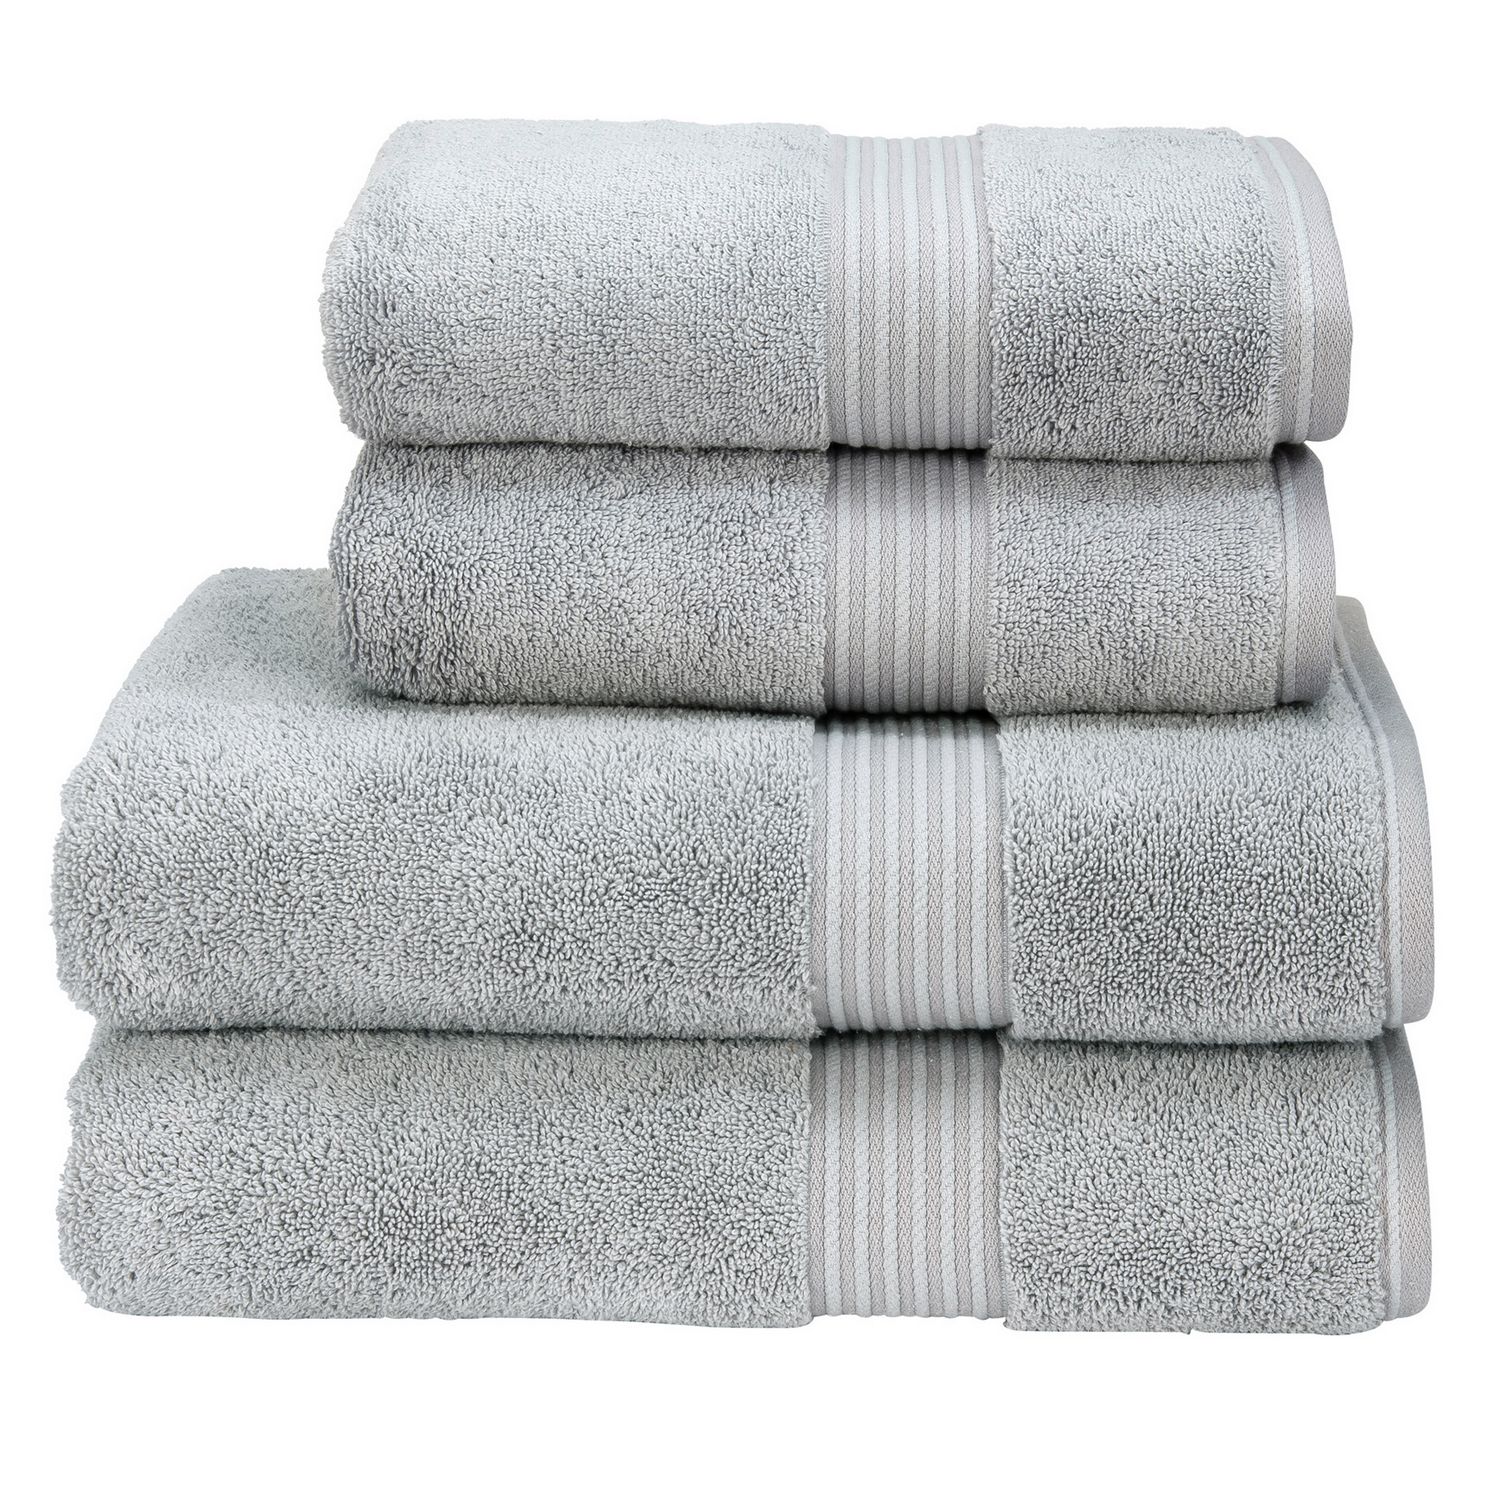 https://www.definingelegance.com/media/Christy-England/Supreme-Towels/Supreme-Towels-Hygro-Silver-L.jpg